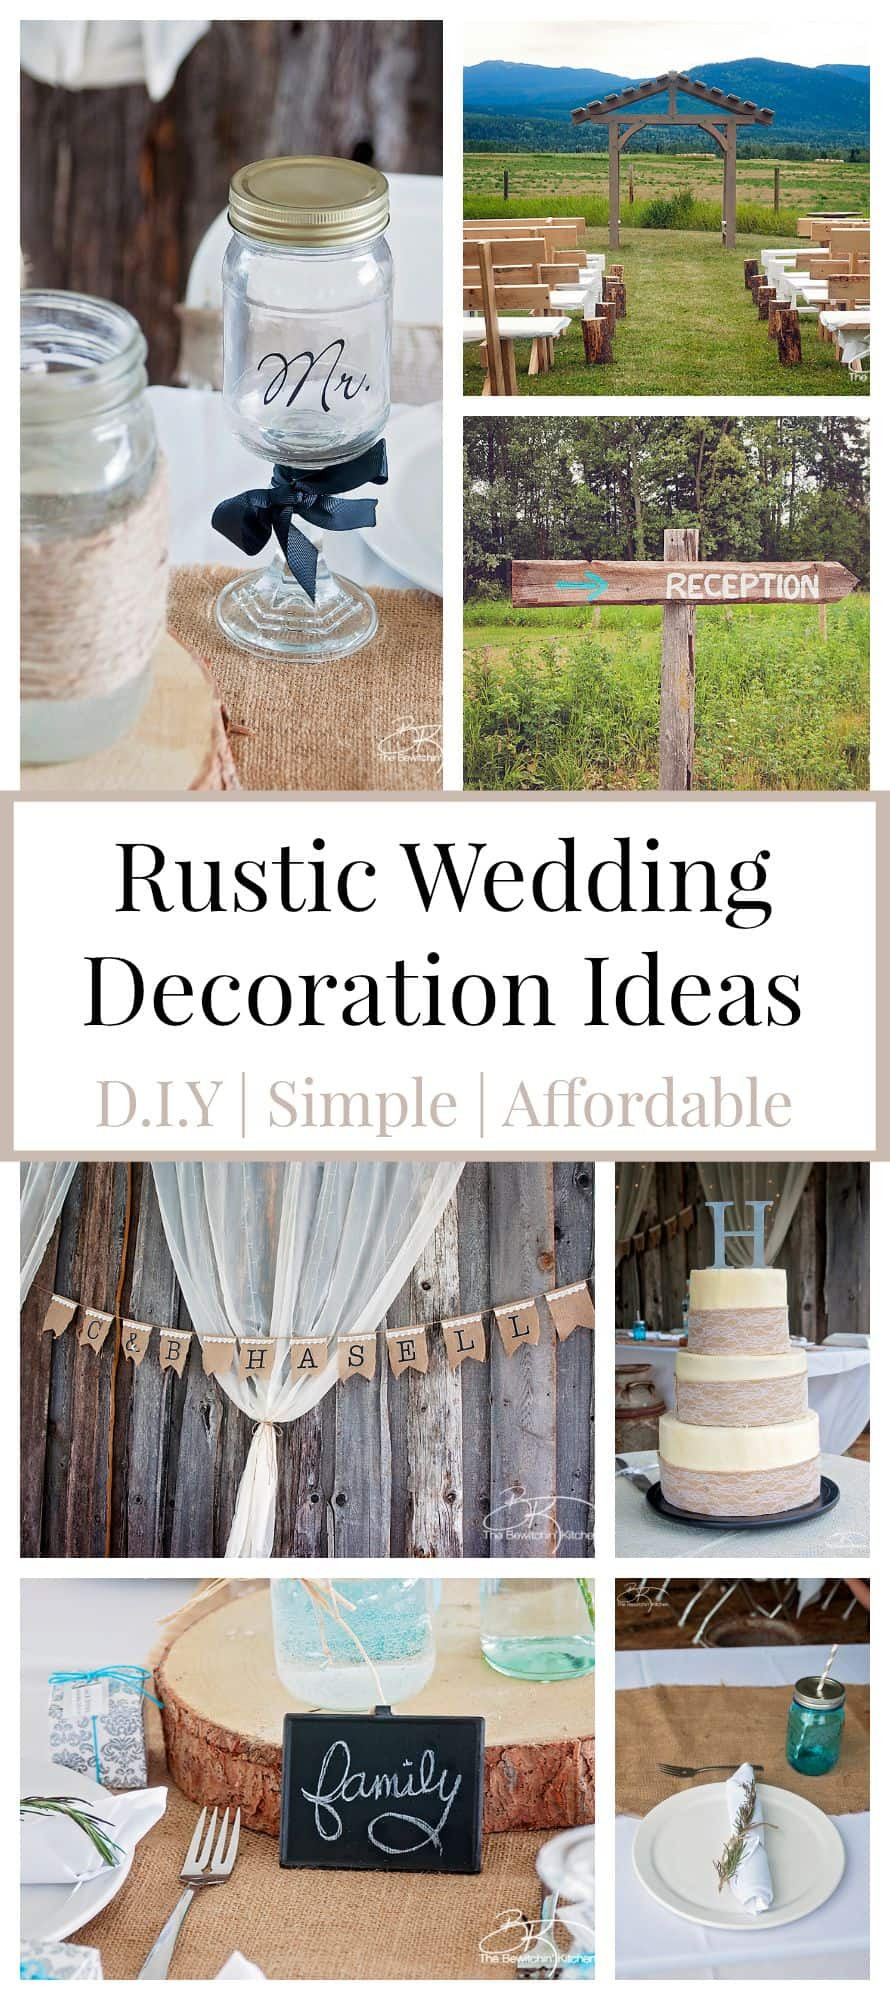 Wedding Ideas DIY
 Rustic Wedding Ideas That Are DIY & Affordable